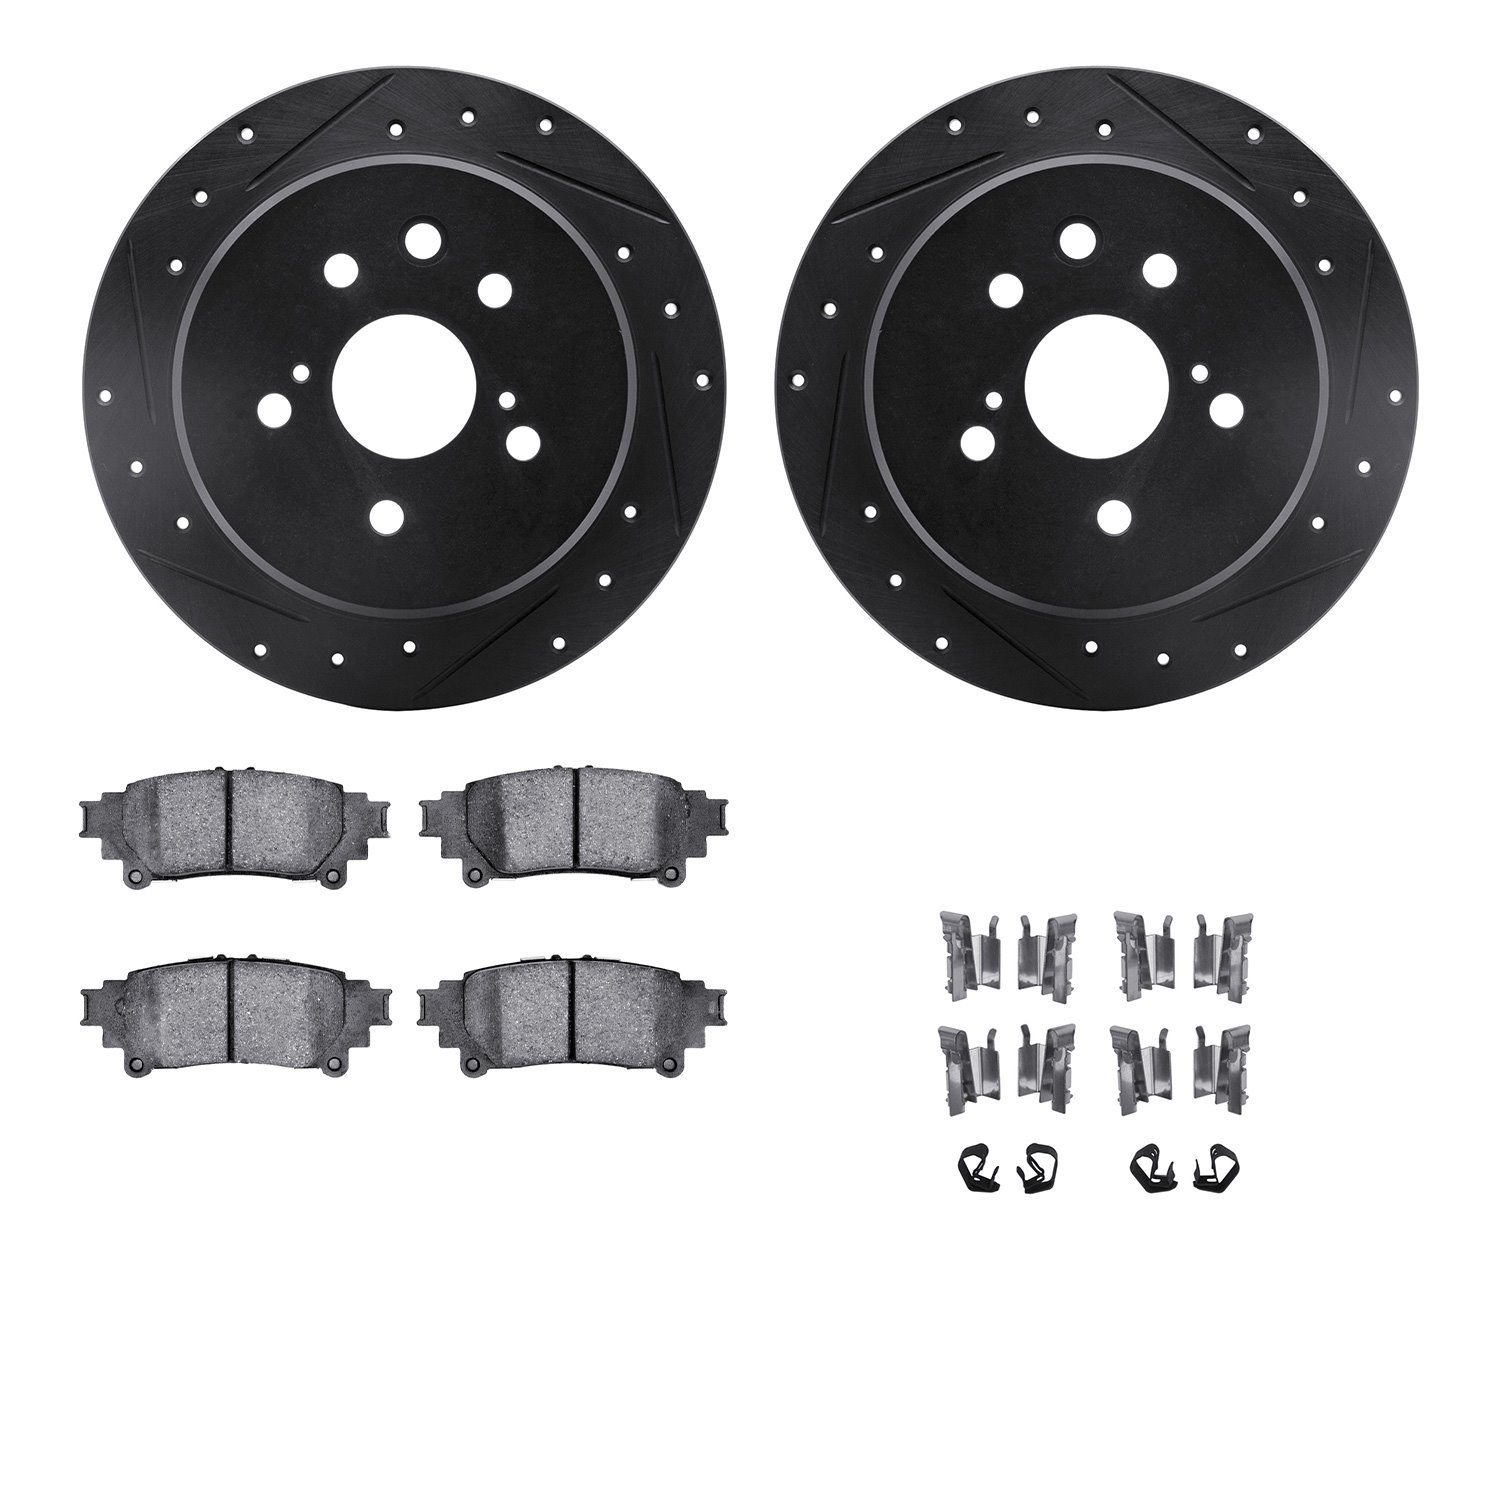 8312-75031 Drilled/Slotted Brake Rotors with 3000-Series Ceramic Brake Pads Kit & Hardware [Black], 2014-2015 Lexus/Toyota/Scion